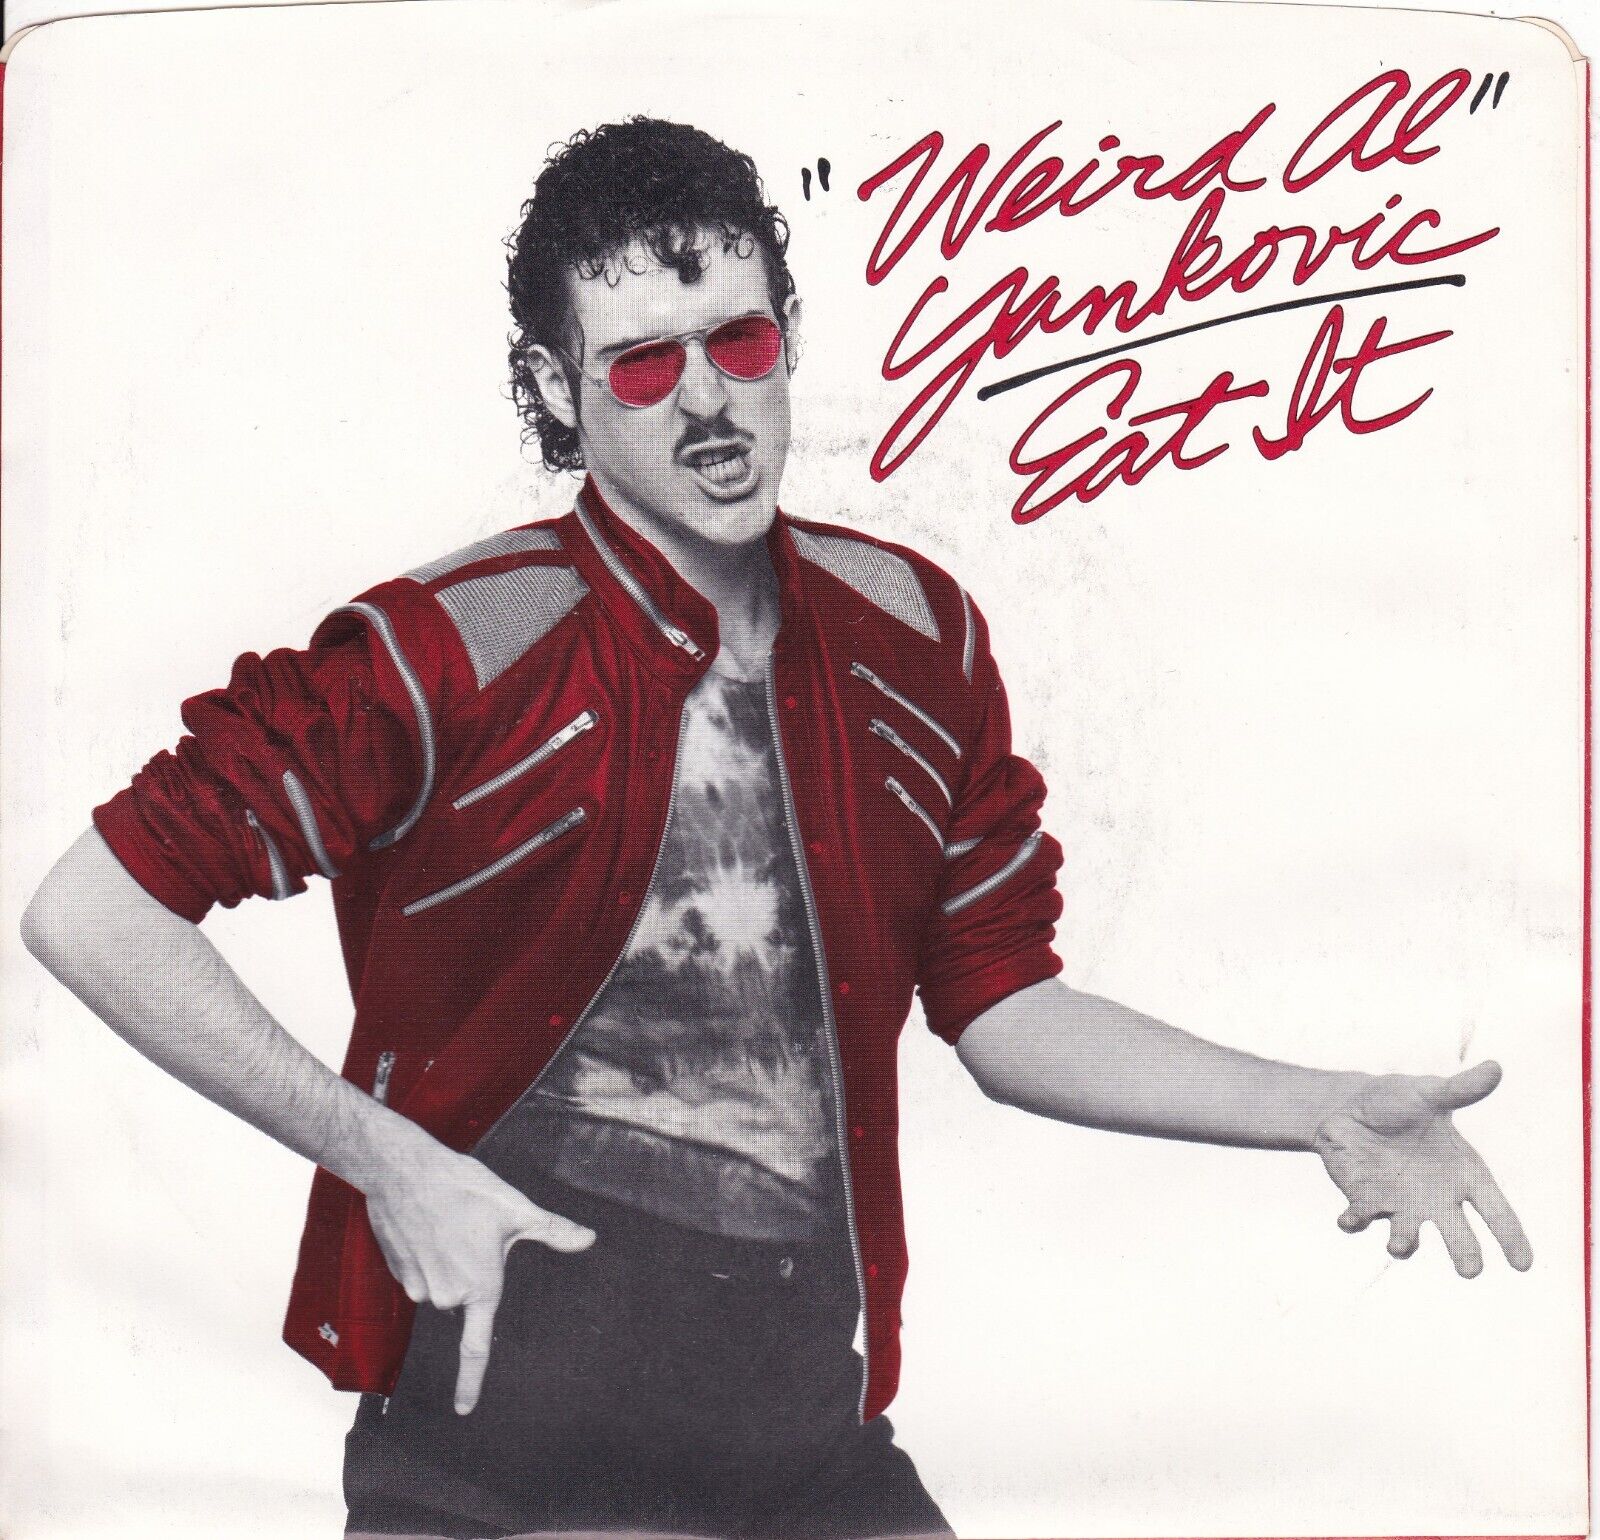 Eat It by Weird Al Yankovic (W/L Promo 7" Vinyl, 1984, Rock 'n' Roll P/S) VG/EX